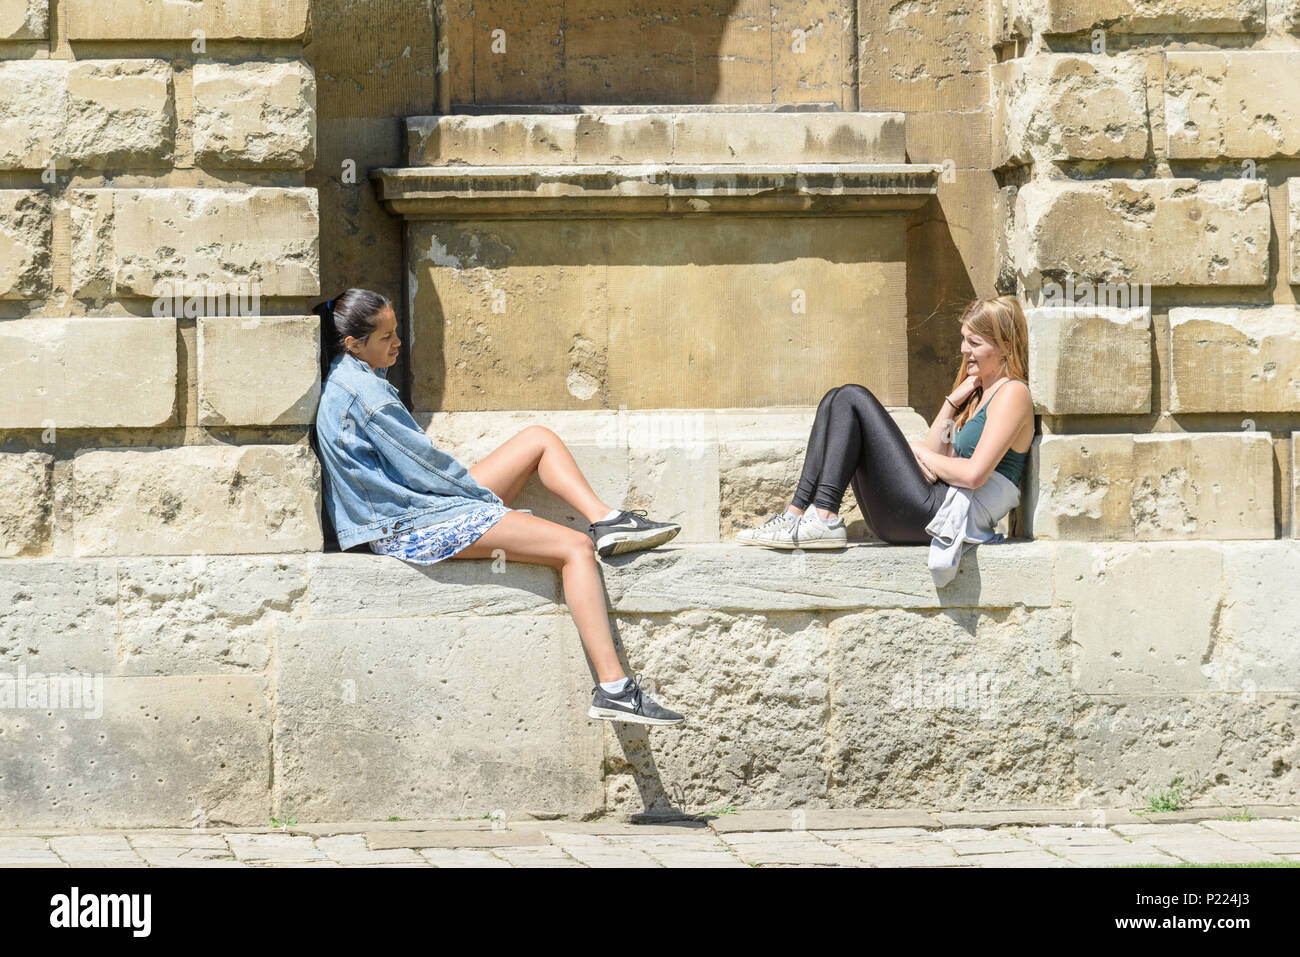 Deux étudiantes s'asseoir sur un rebord de parler à la Radcliffe Camera Bodleian Library au cours d'une journée ensoleillée à l'université d'Oxford, en Angleterre. Banque D'Images